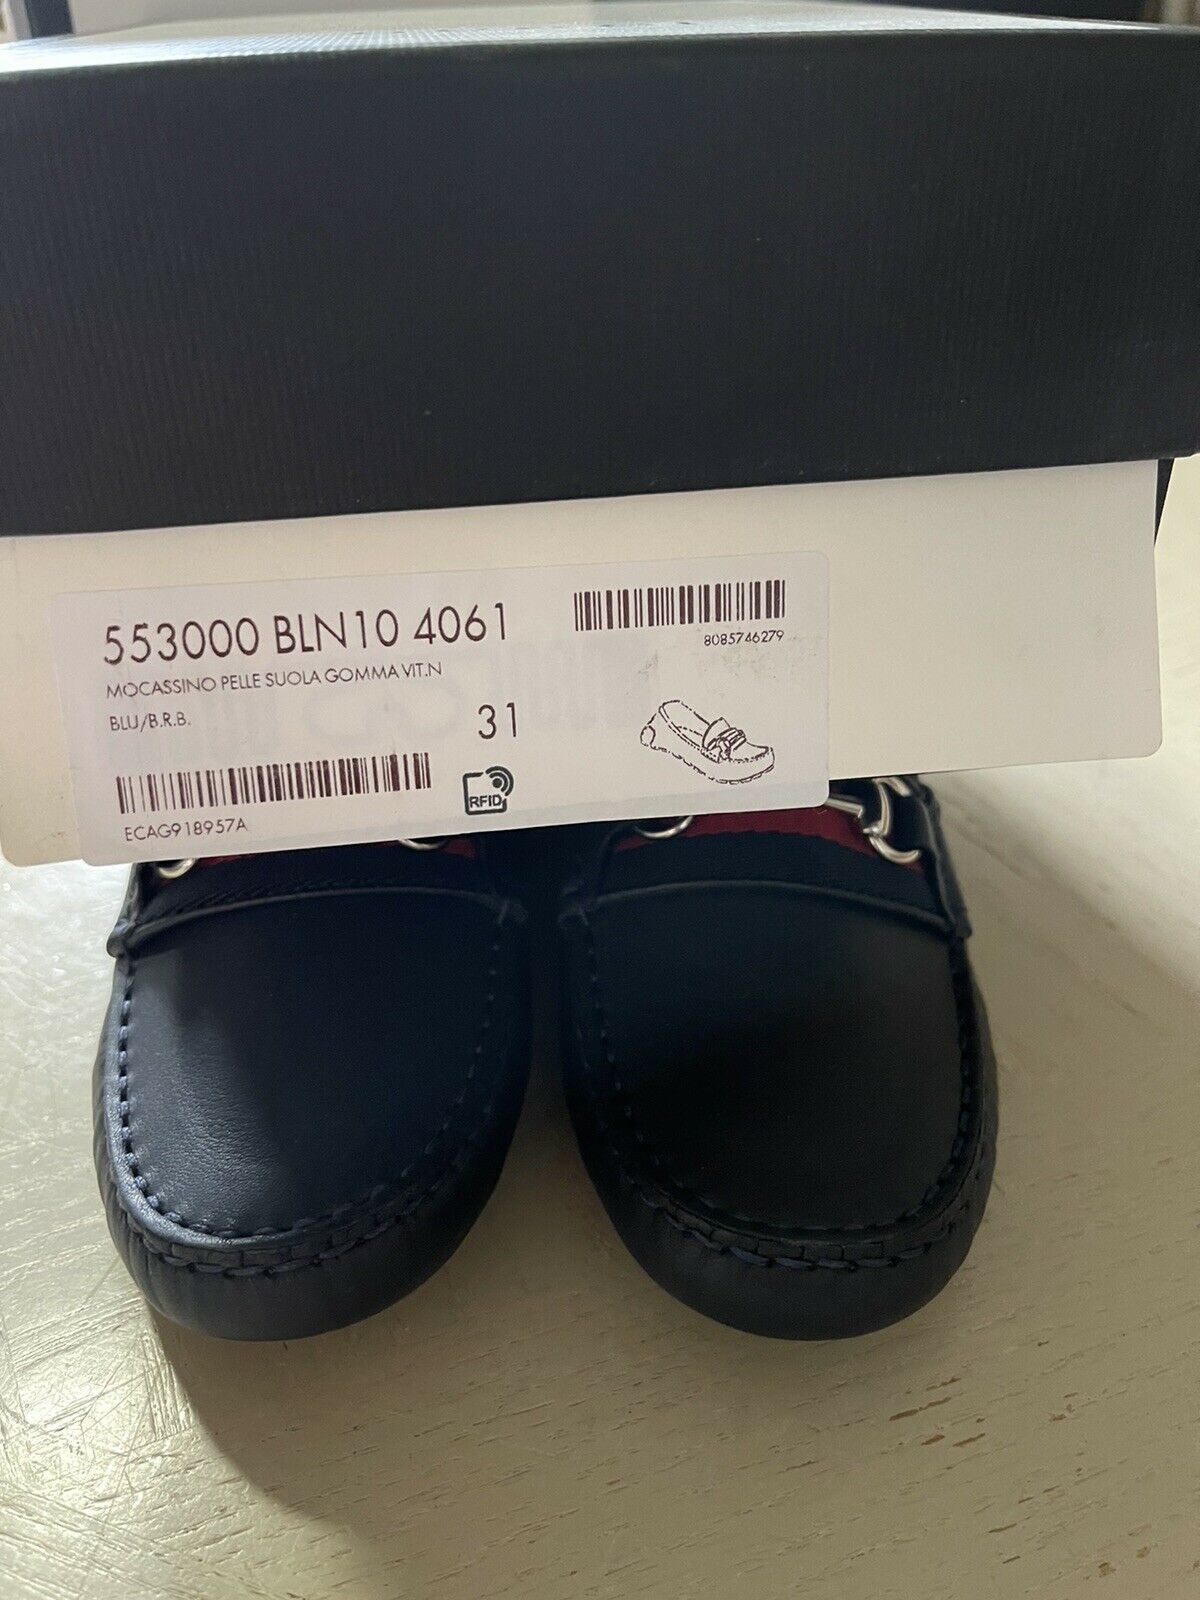 NIB Gucci Детские кожаные туфли для вождения для мальчиков, черные, размер 31/13, США, 6 лет